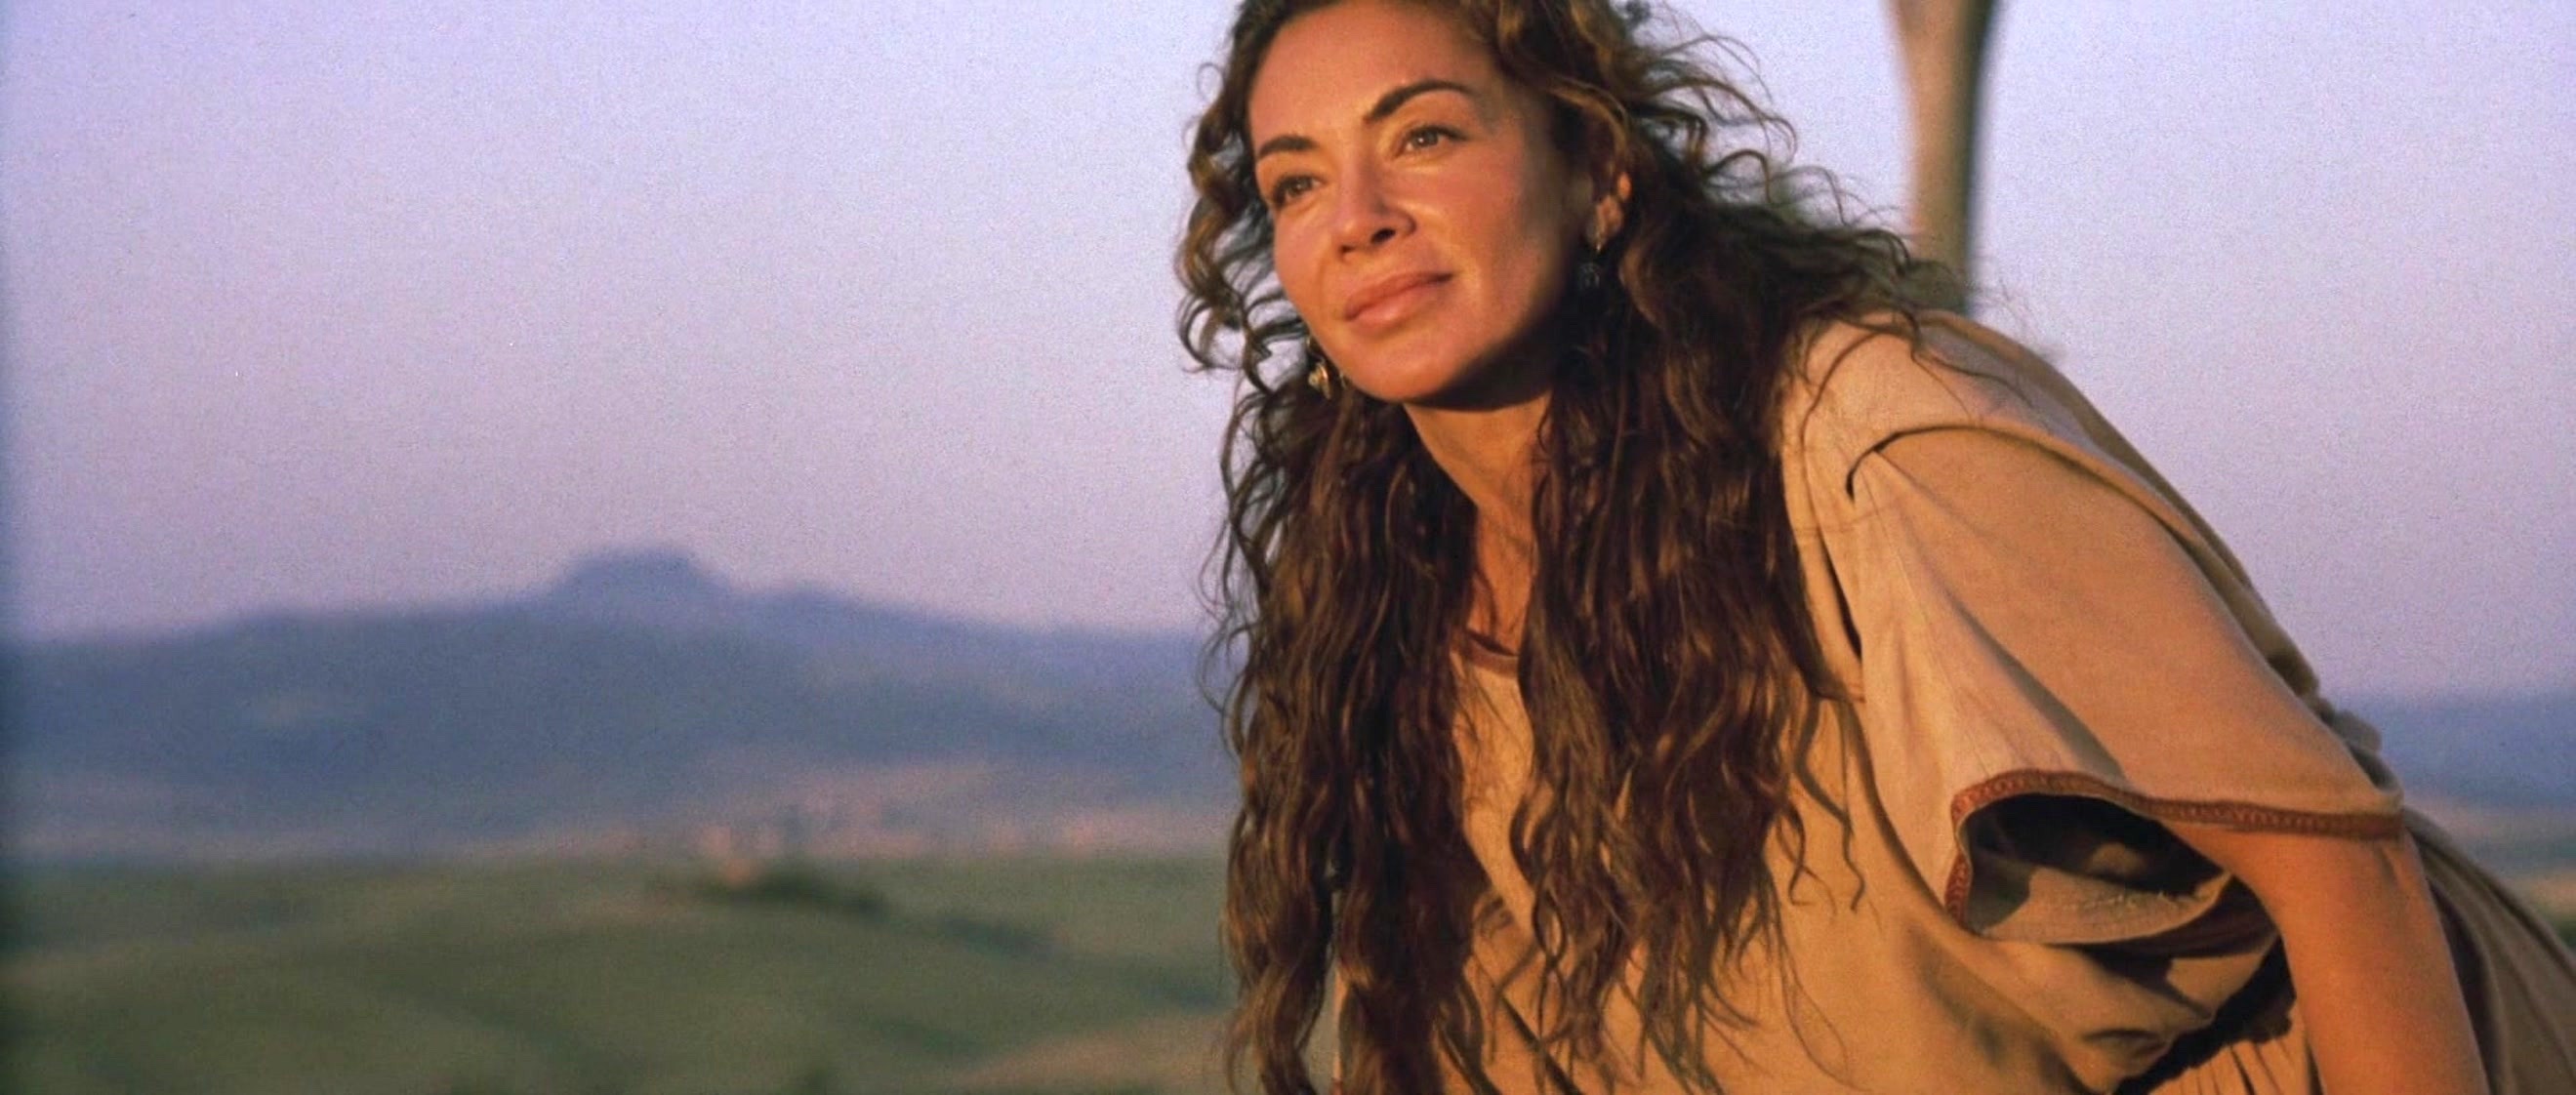 Giannina Facio, en Gladiator, donde interpreta a la mujer de Russell Crowe.